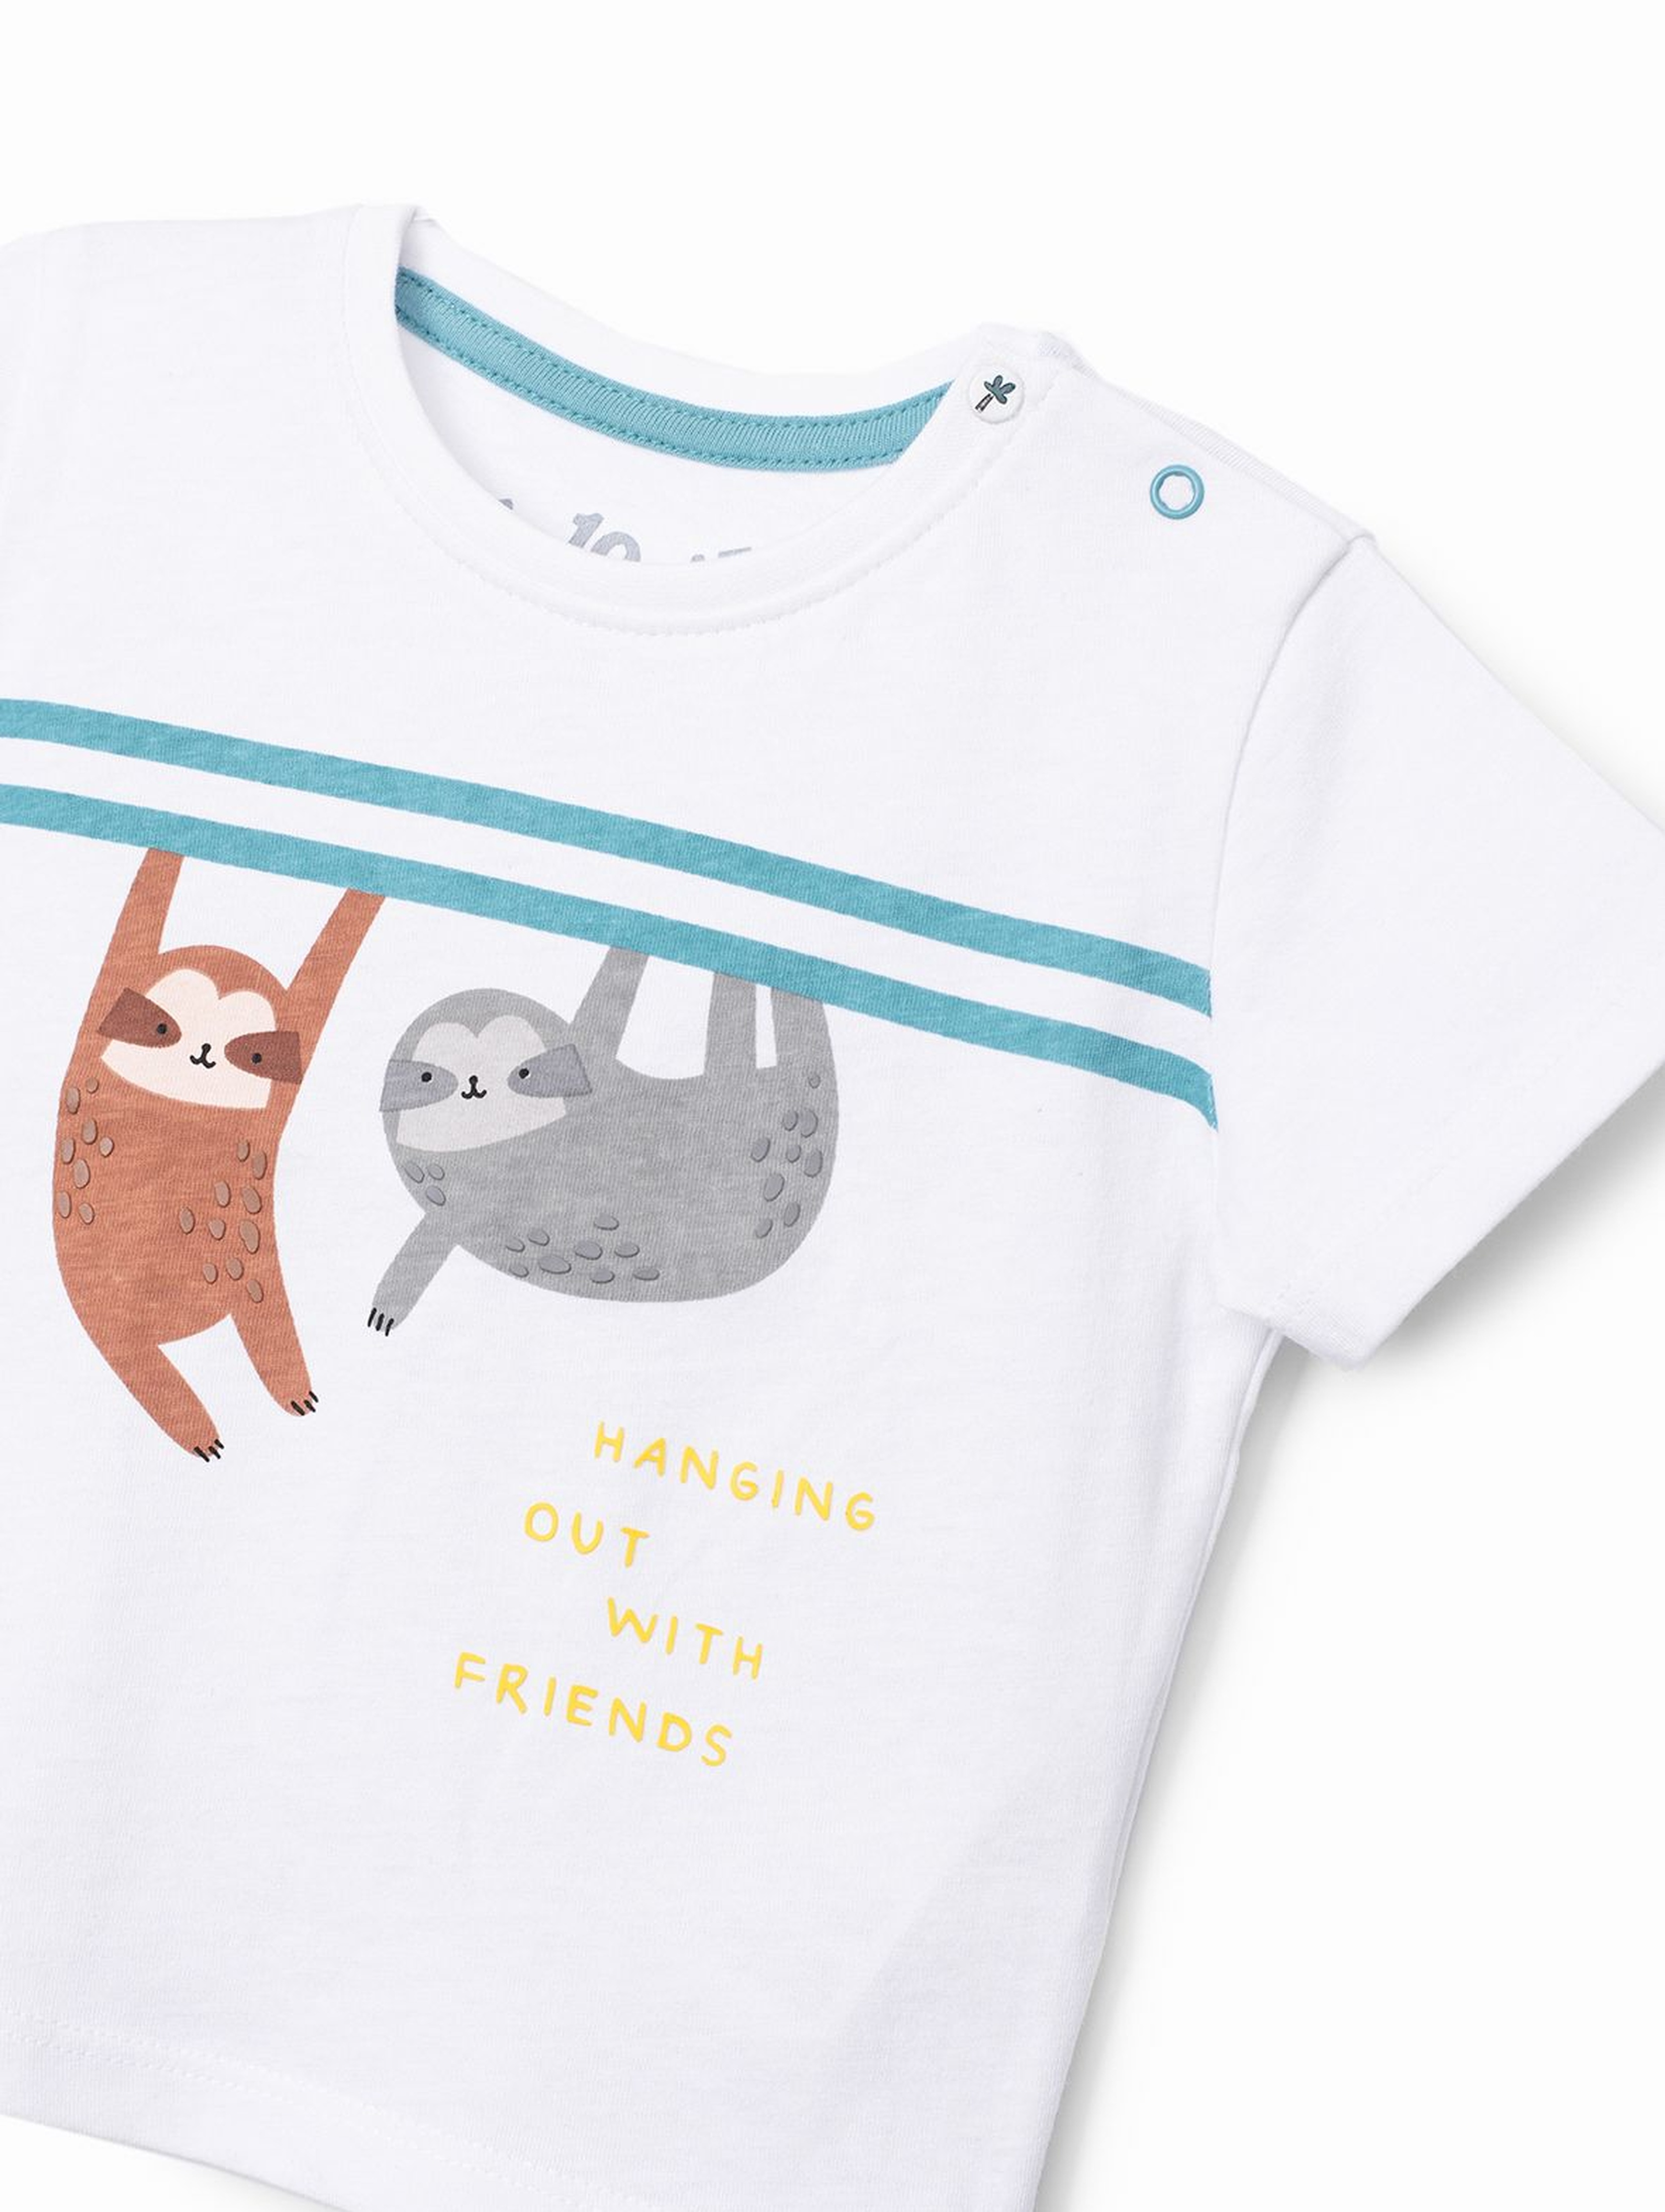 T-shirt niemowlęcy biały z leniwcami